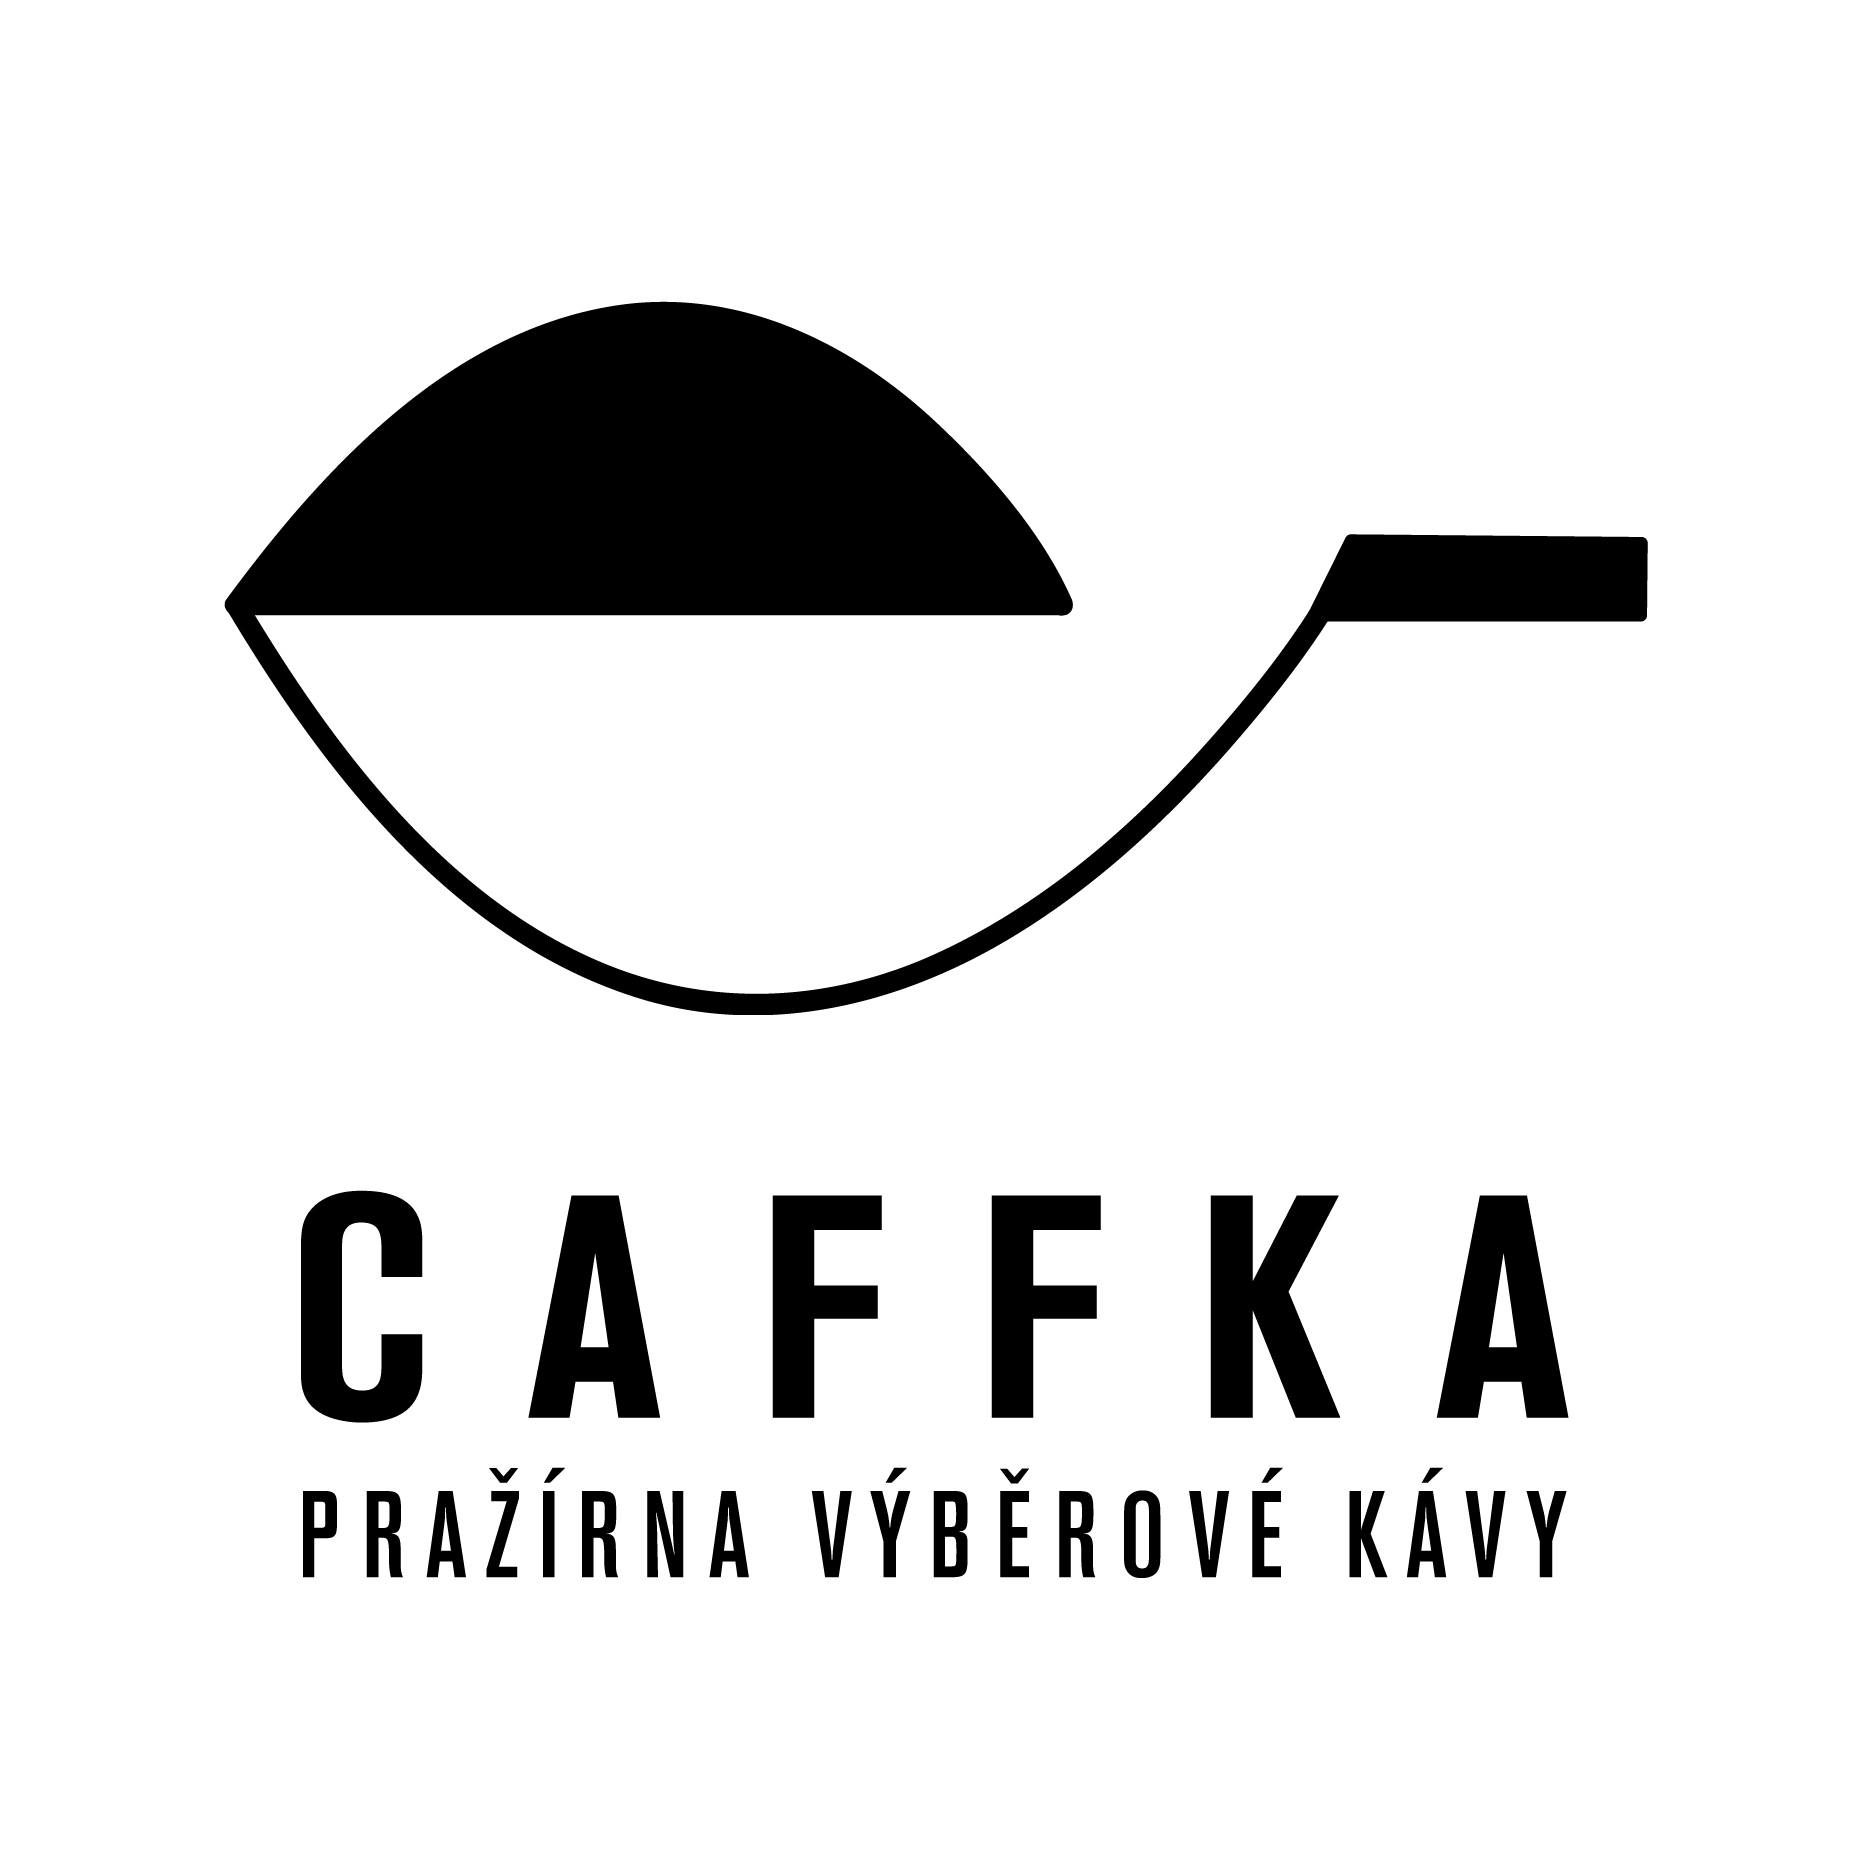 Pražírna Caffka